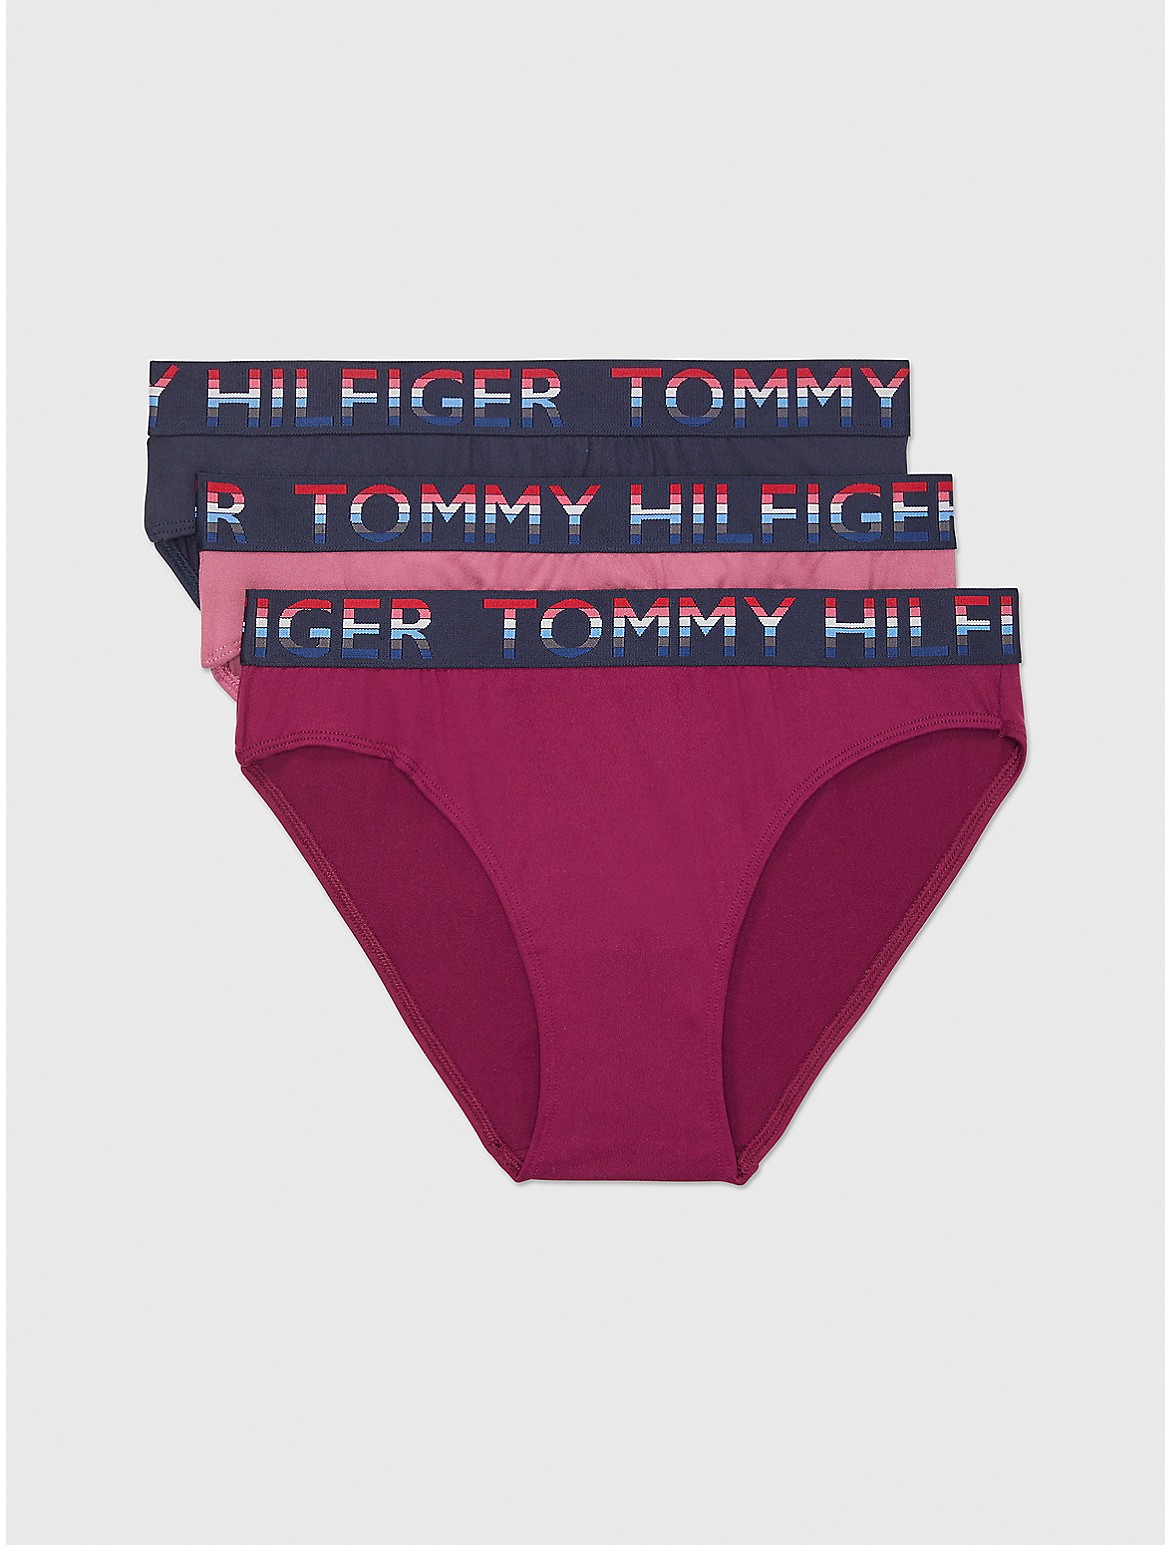 Tommy Hilfiger Women's Microfiber Bikini 3-Pack - Multi - L